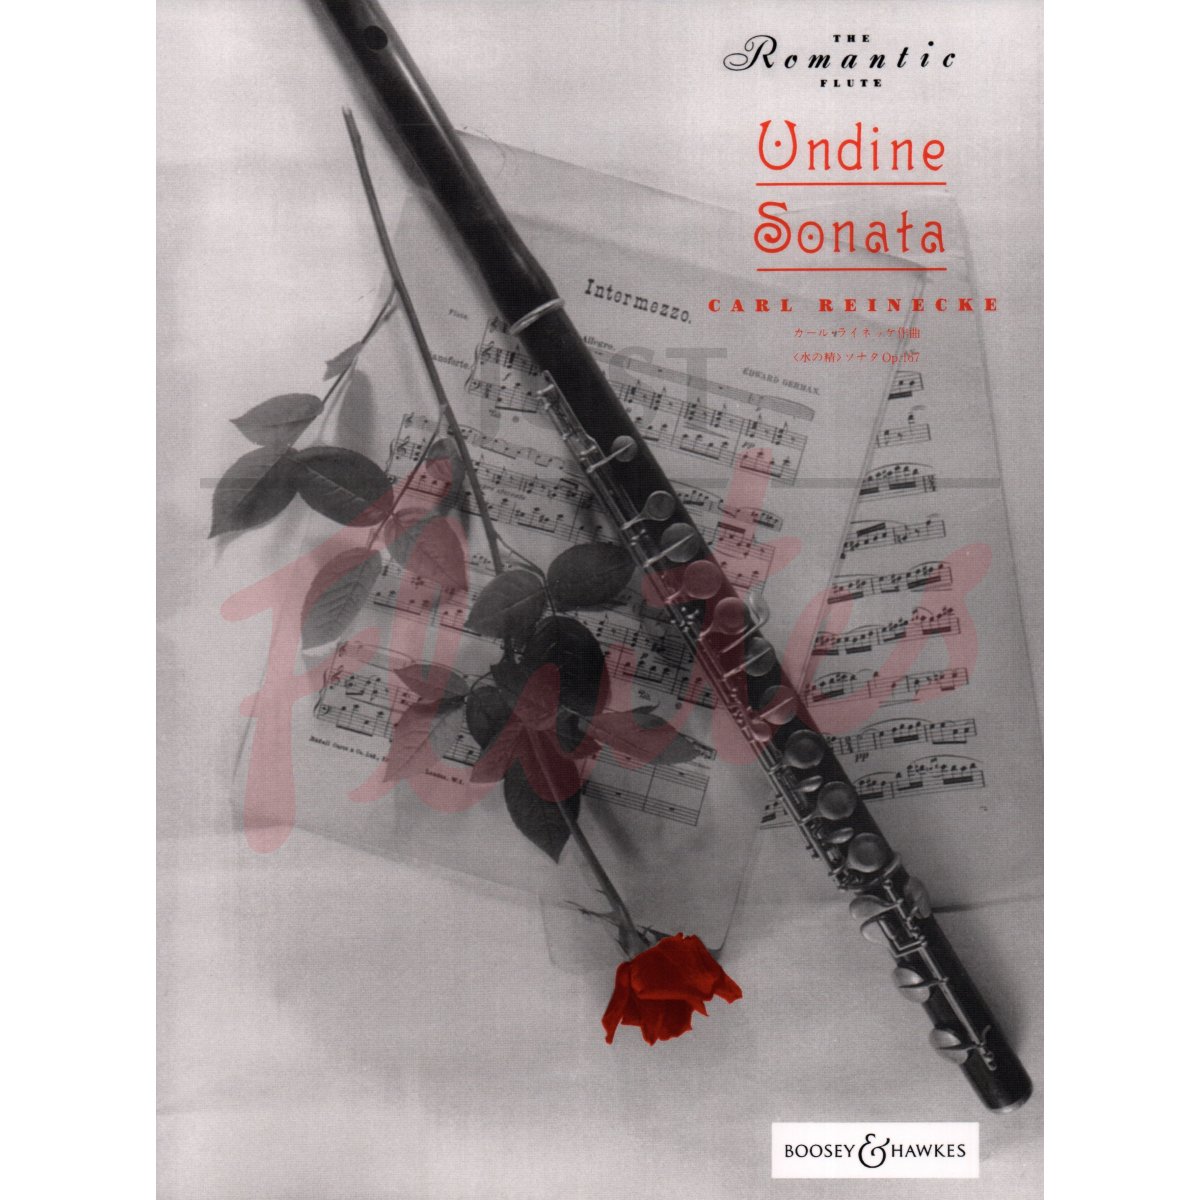 Sonata 'Undine' for Flute and Piano